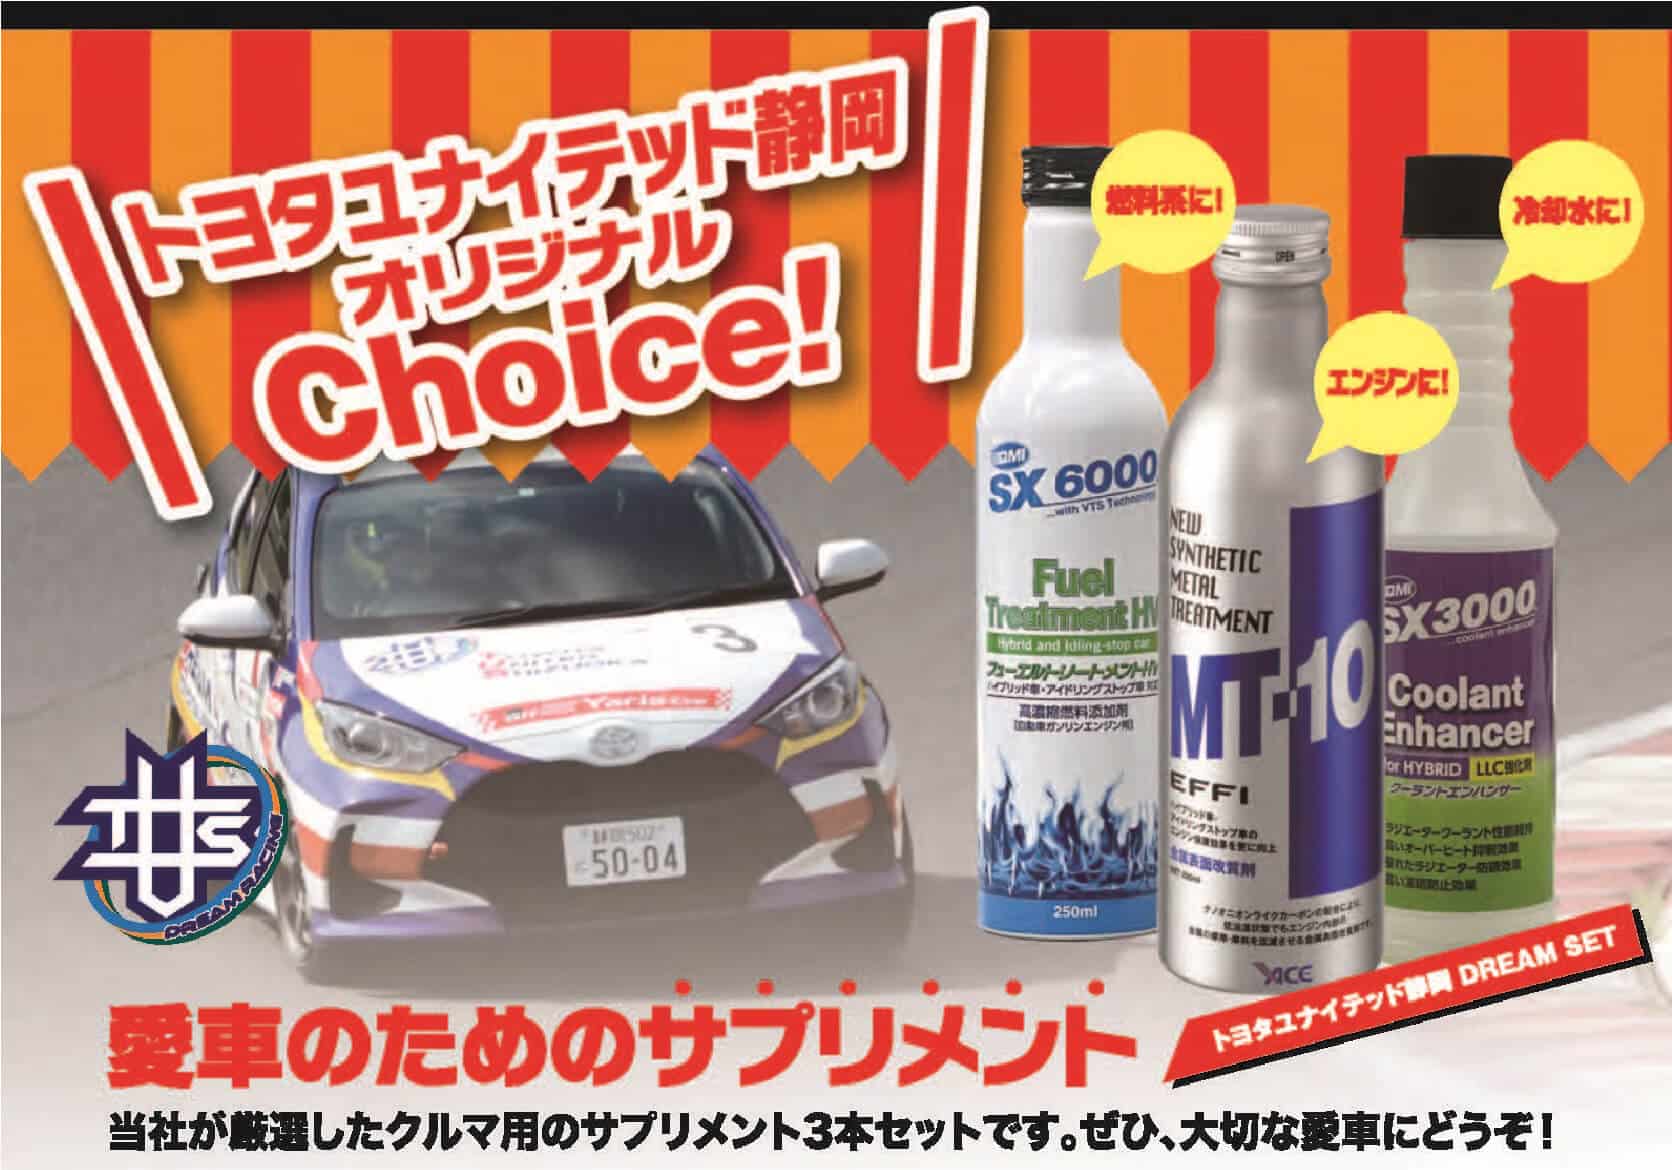 トヨタユナイテッド静岡オリジナルChoice! 愛車のためのサプリメント 当社が厳選したクルマ用のサプリメント3本セットです。 ぜひ、大切な愛車にどうぞ!